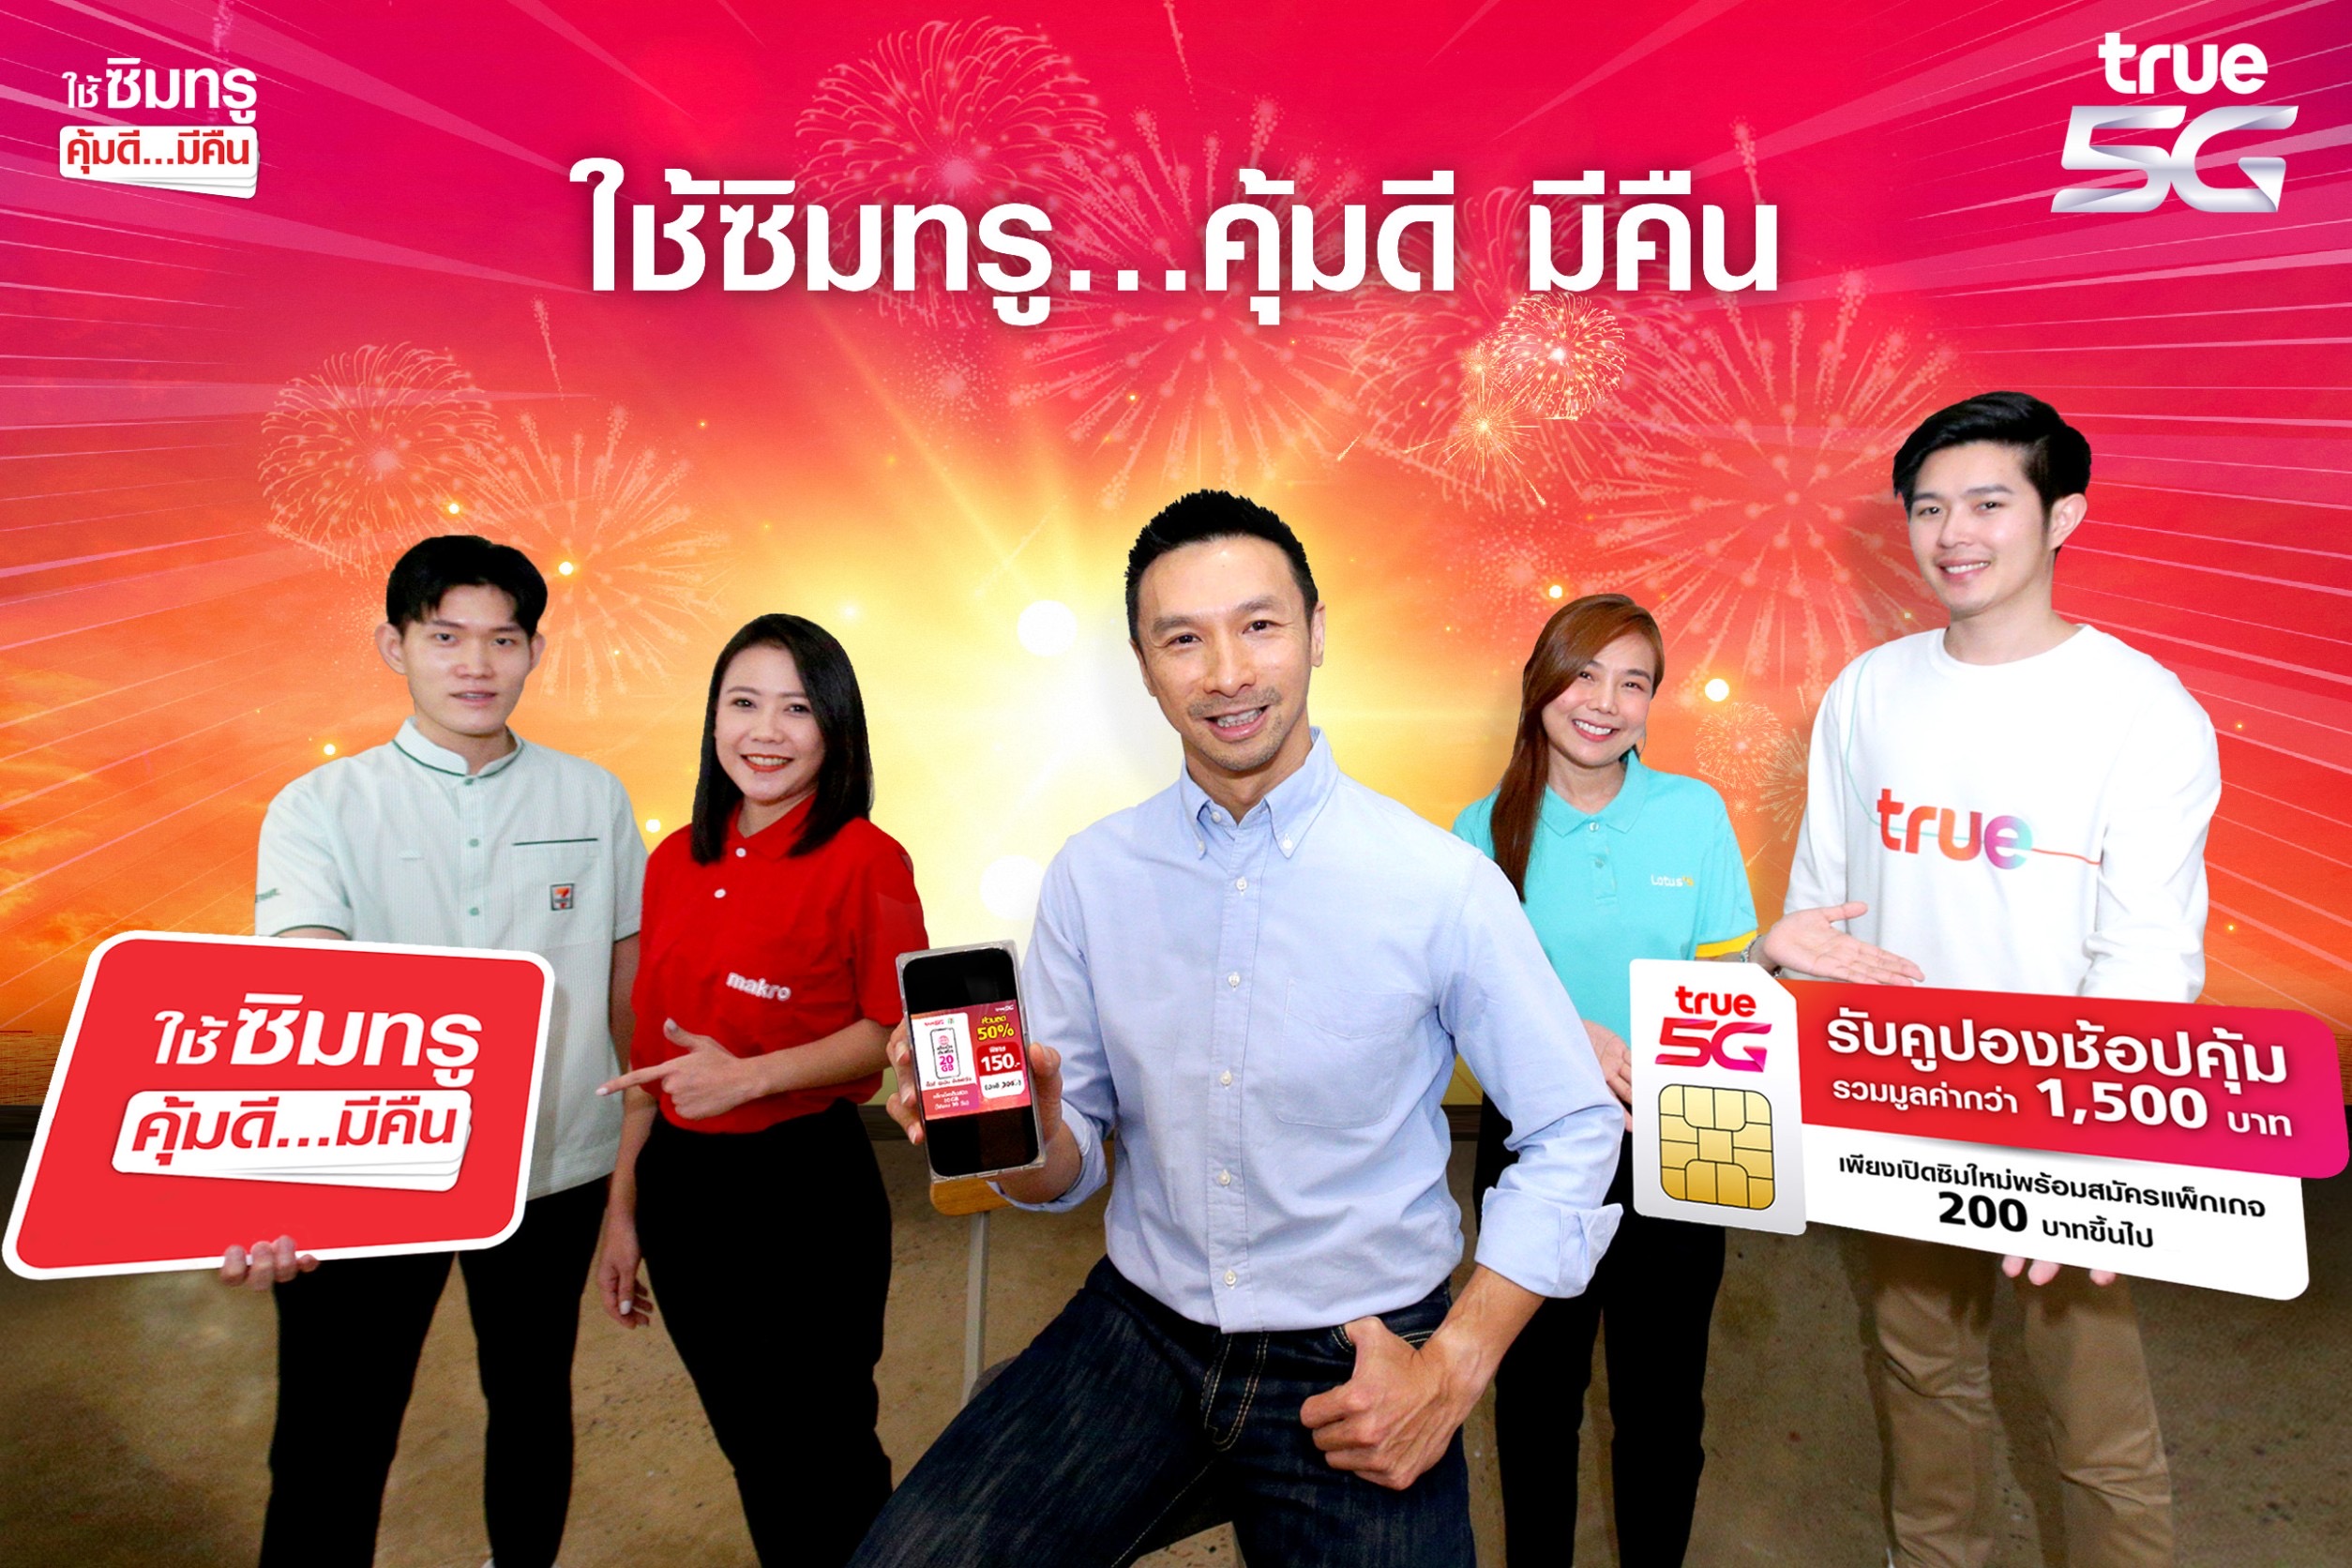 ทรู 5G ส่งแคมเปญใหญ่ ให้คนไทยยิ้มรับปีกระต่าย “ใช้ซิมทรู…คุ้มดี มีคืน”